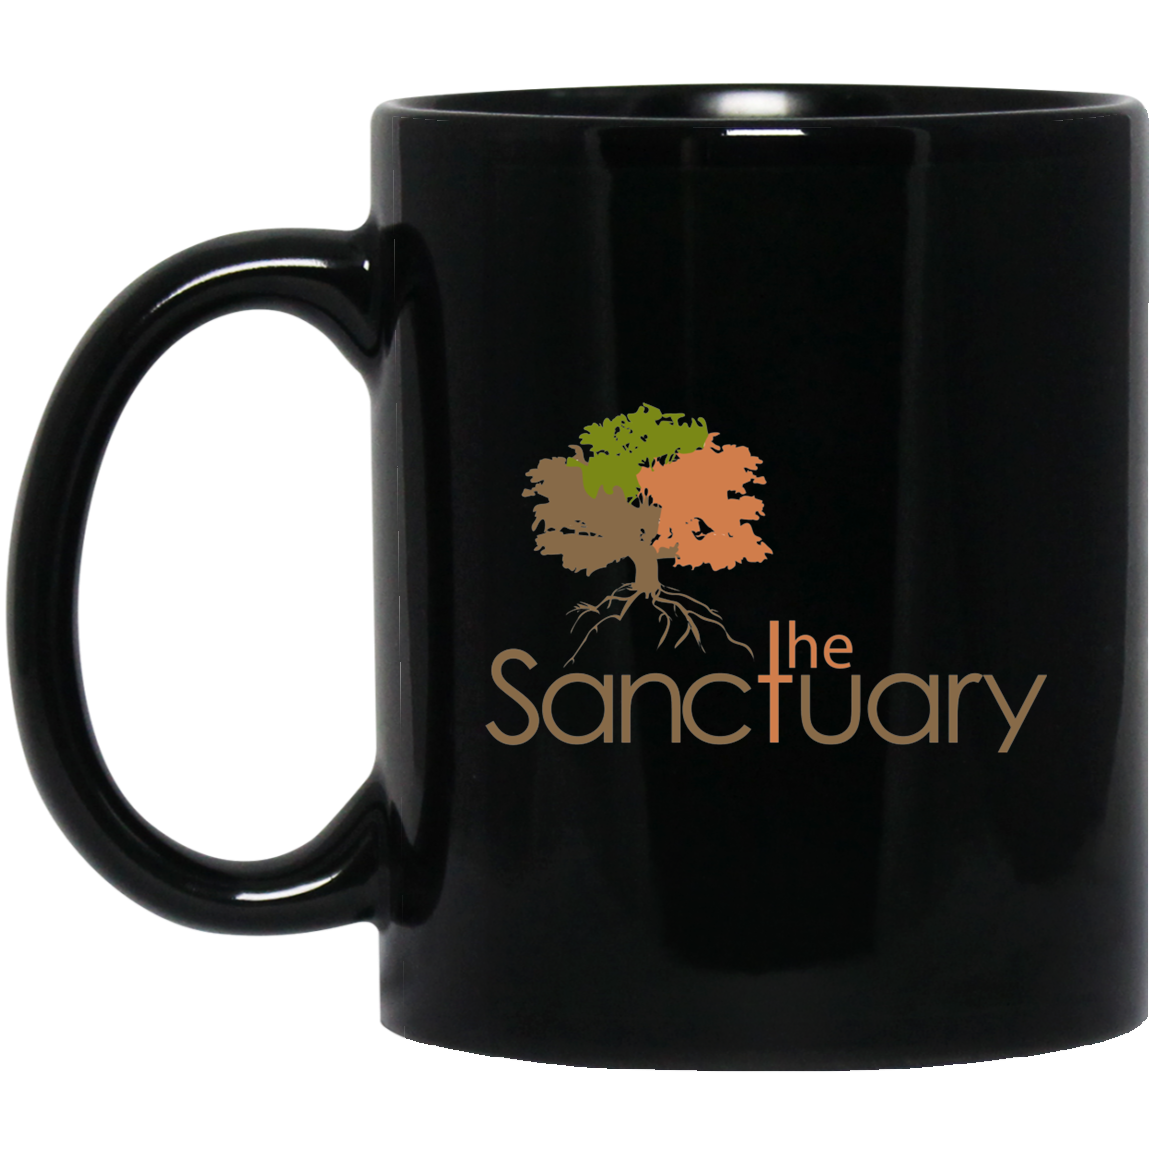 The Sanctuary - 11 oz. Black Mug